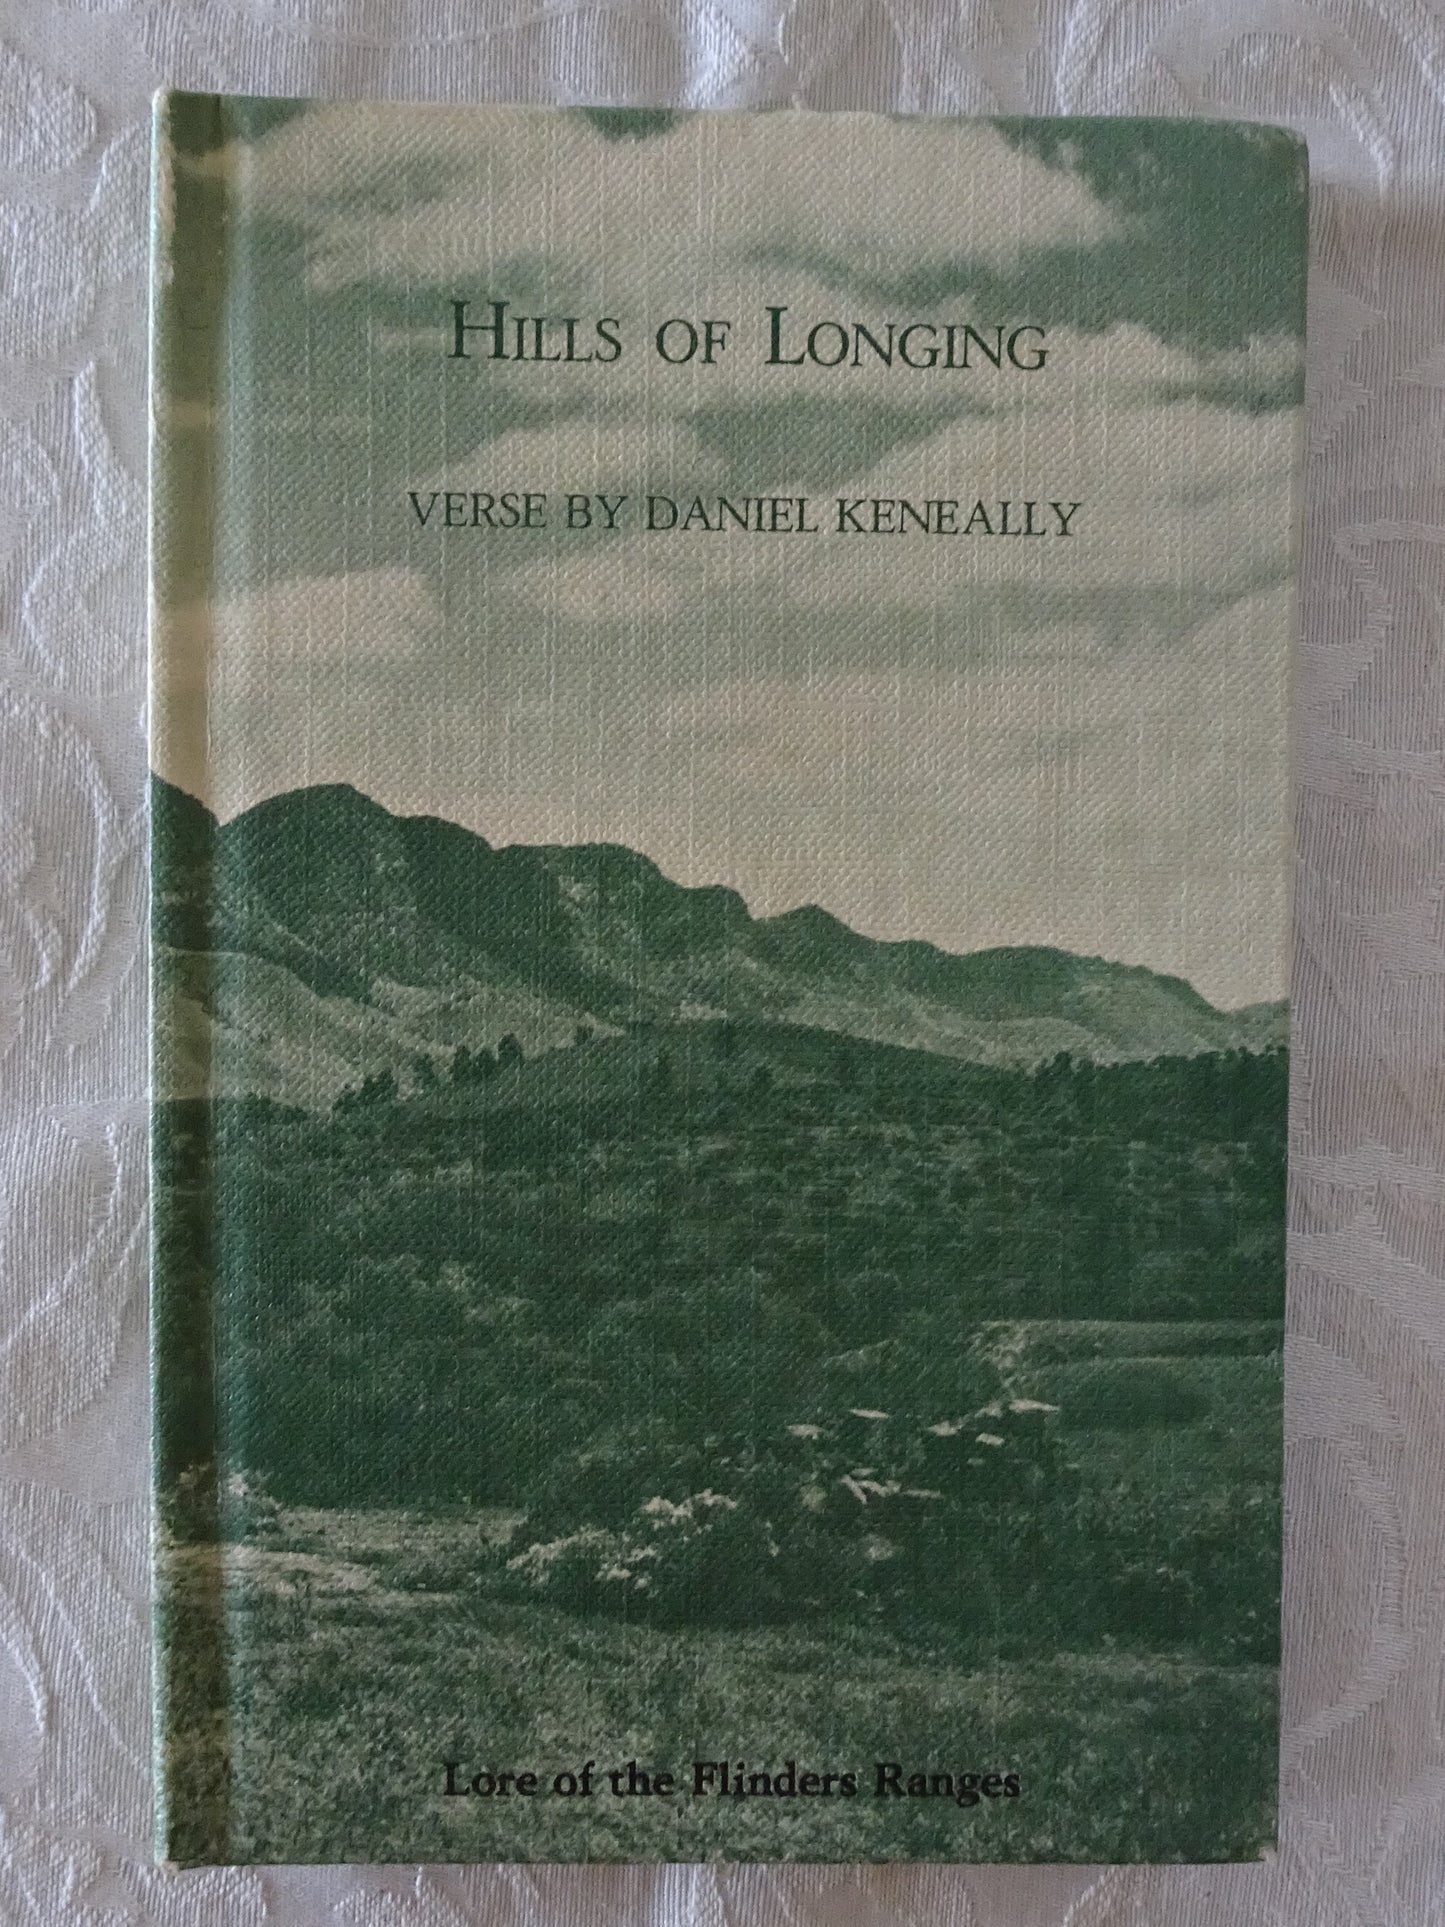 Hills of Longing by Daniel Keneally